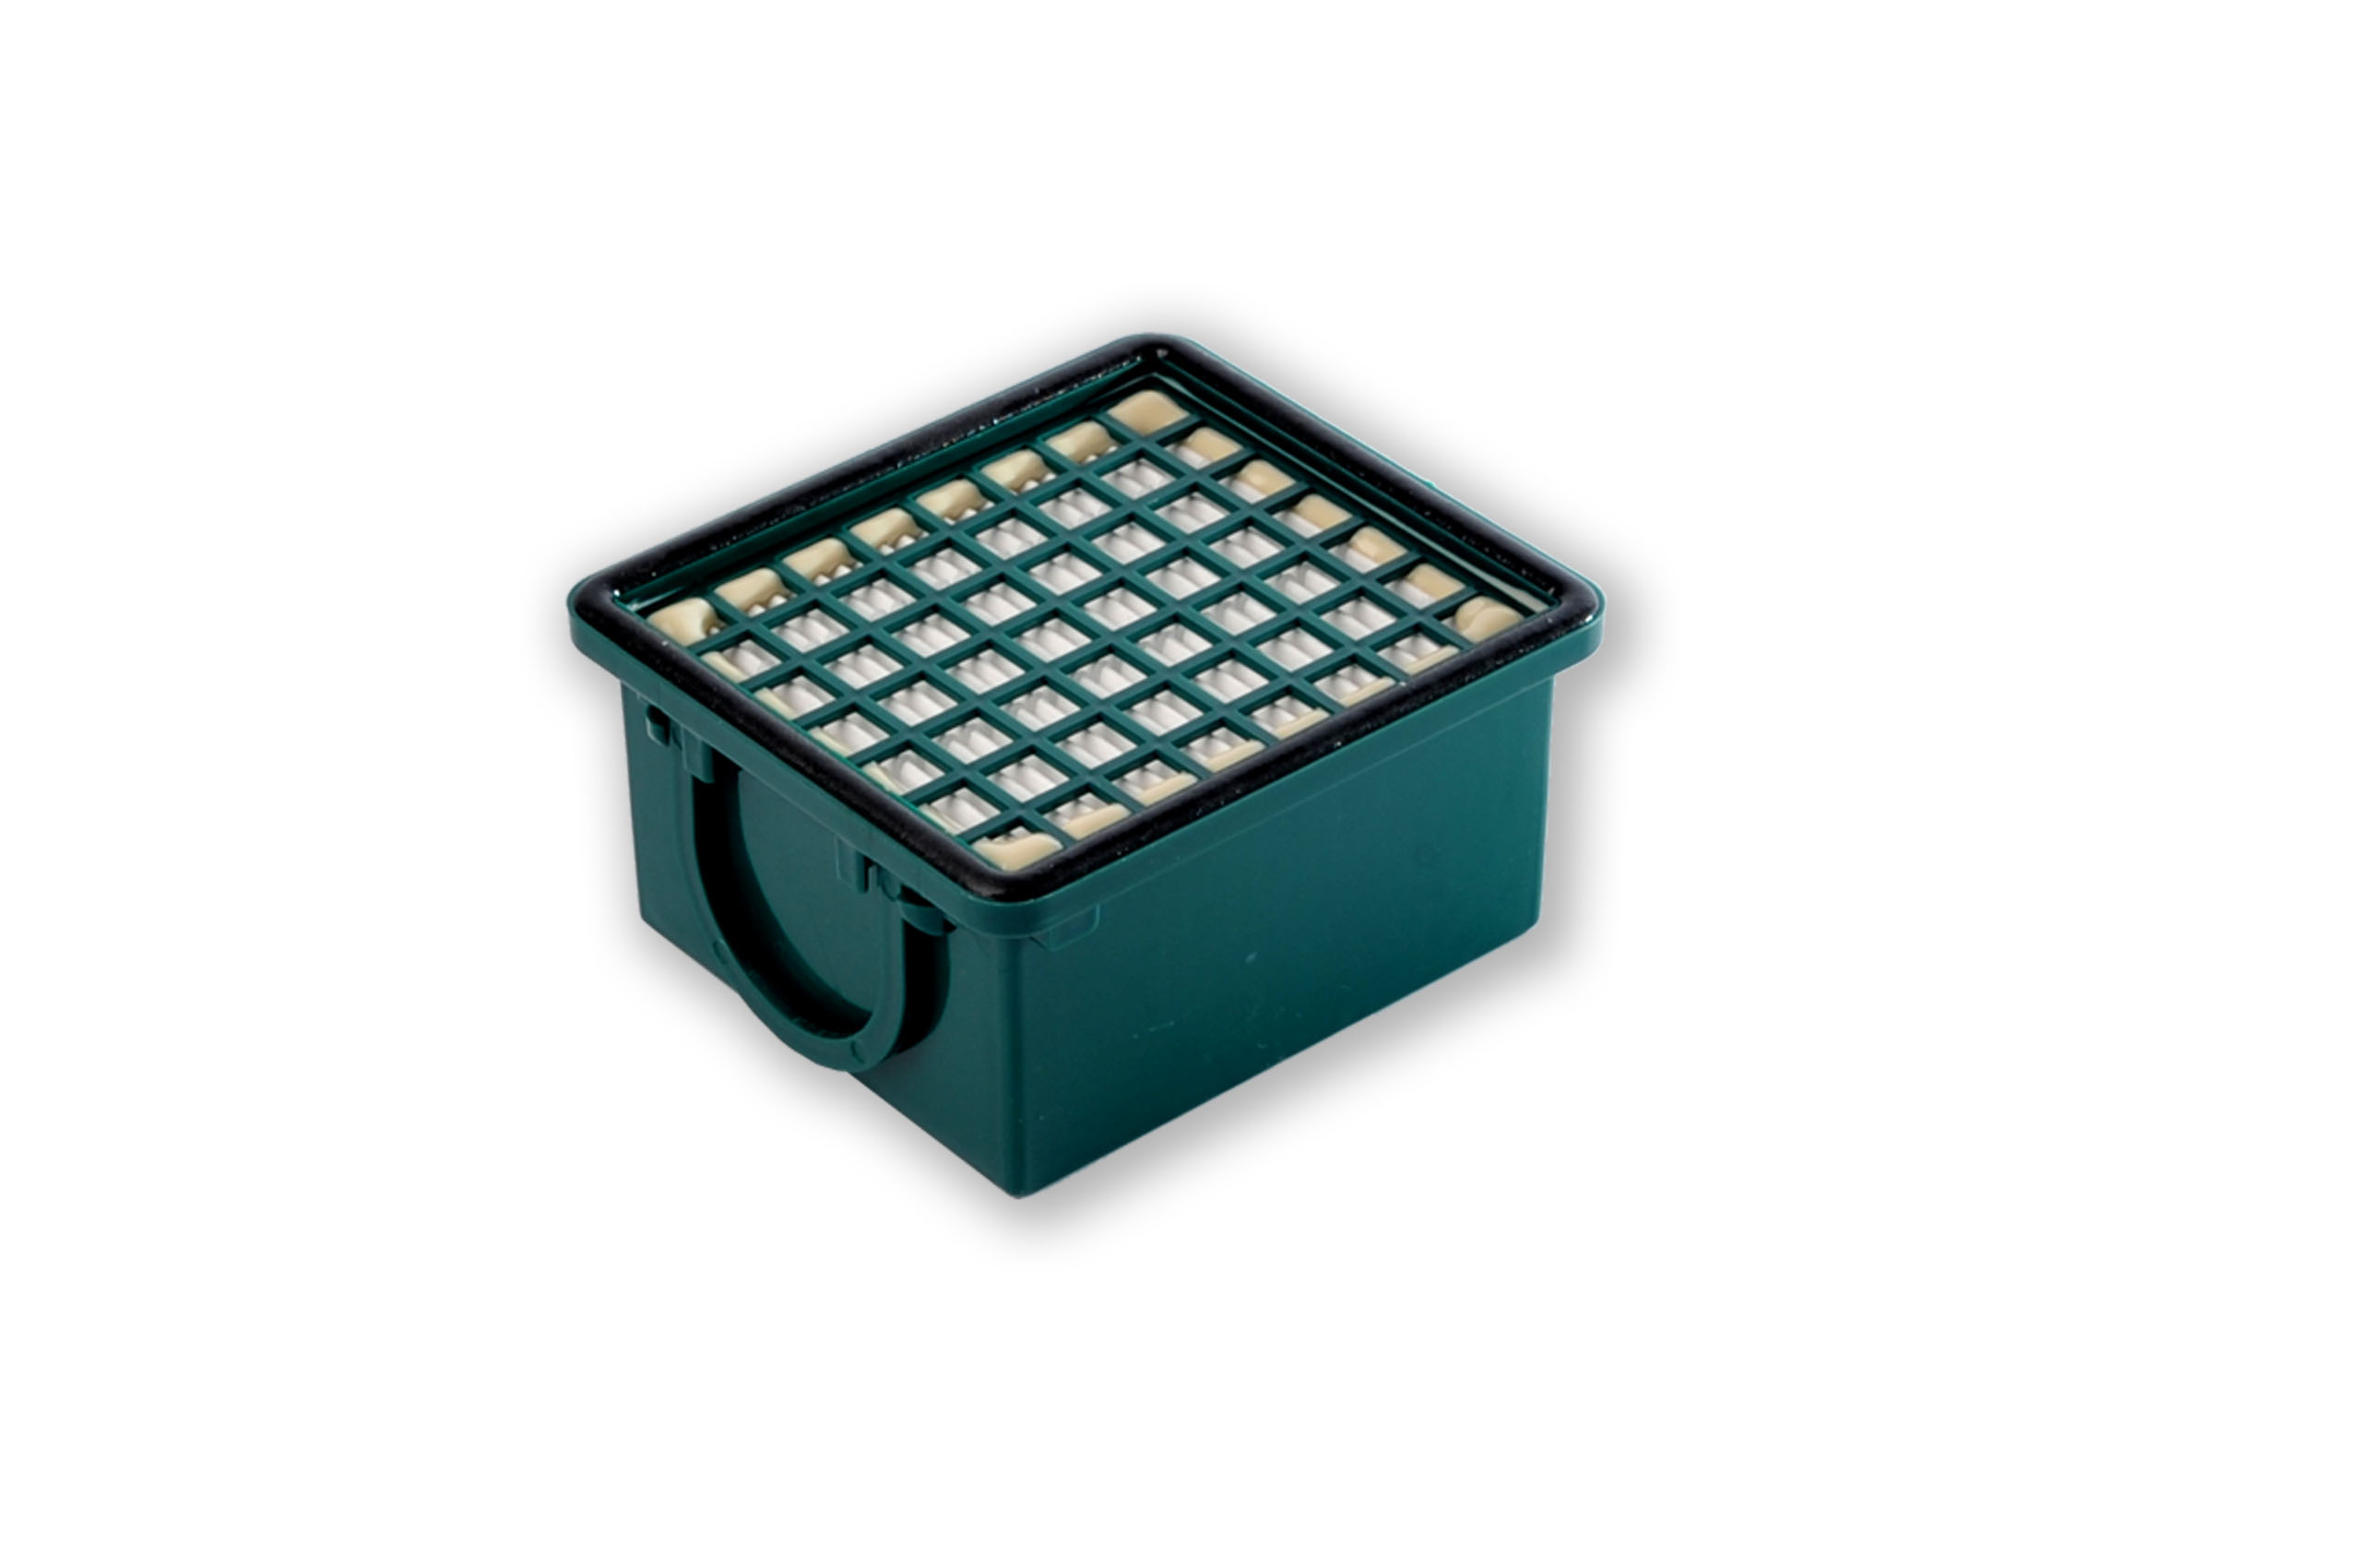 Filterset kompatibel mit Vorwerk Kobold VK 130, VK 131, SC: 10 Staubsaugerbeutel ähnlich FP 130, FP 131 , Staubbeutel + 1 Hygiene-Mikrofilter HEPA + 1 Aktivkohlefilter